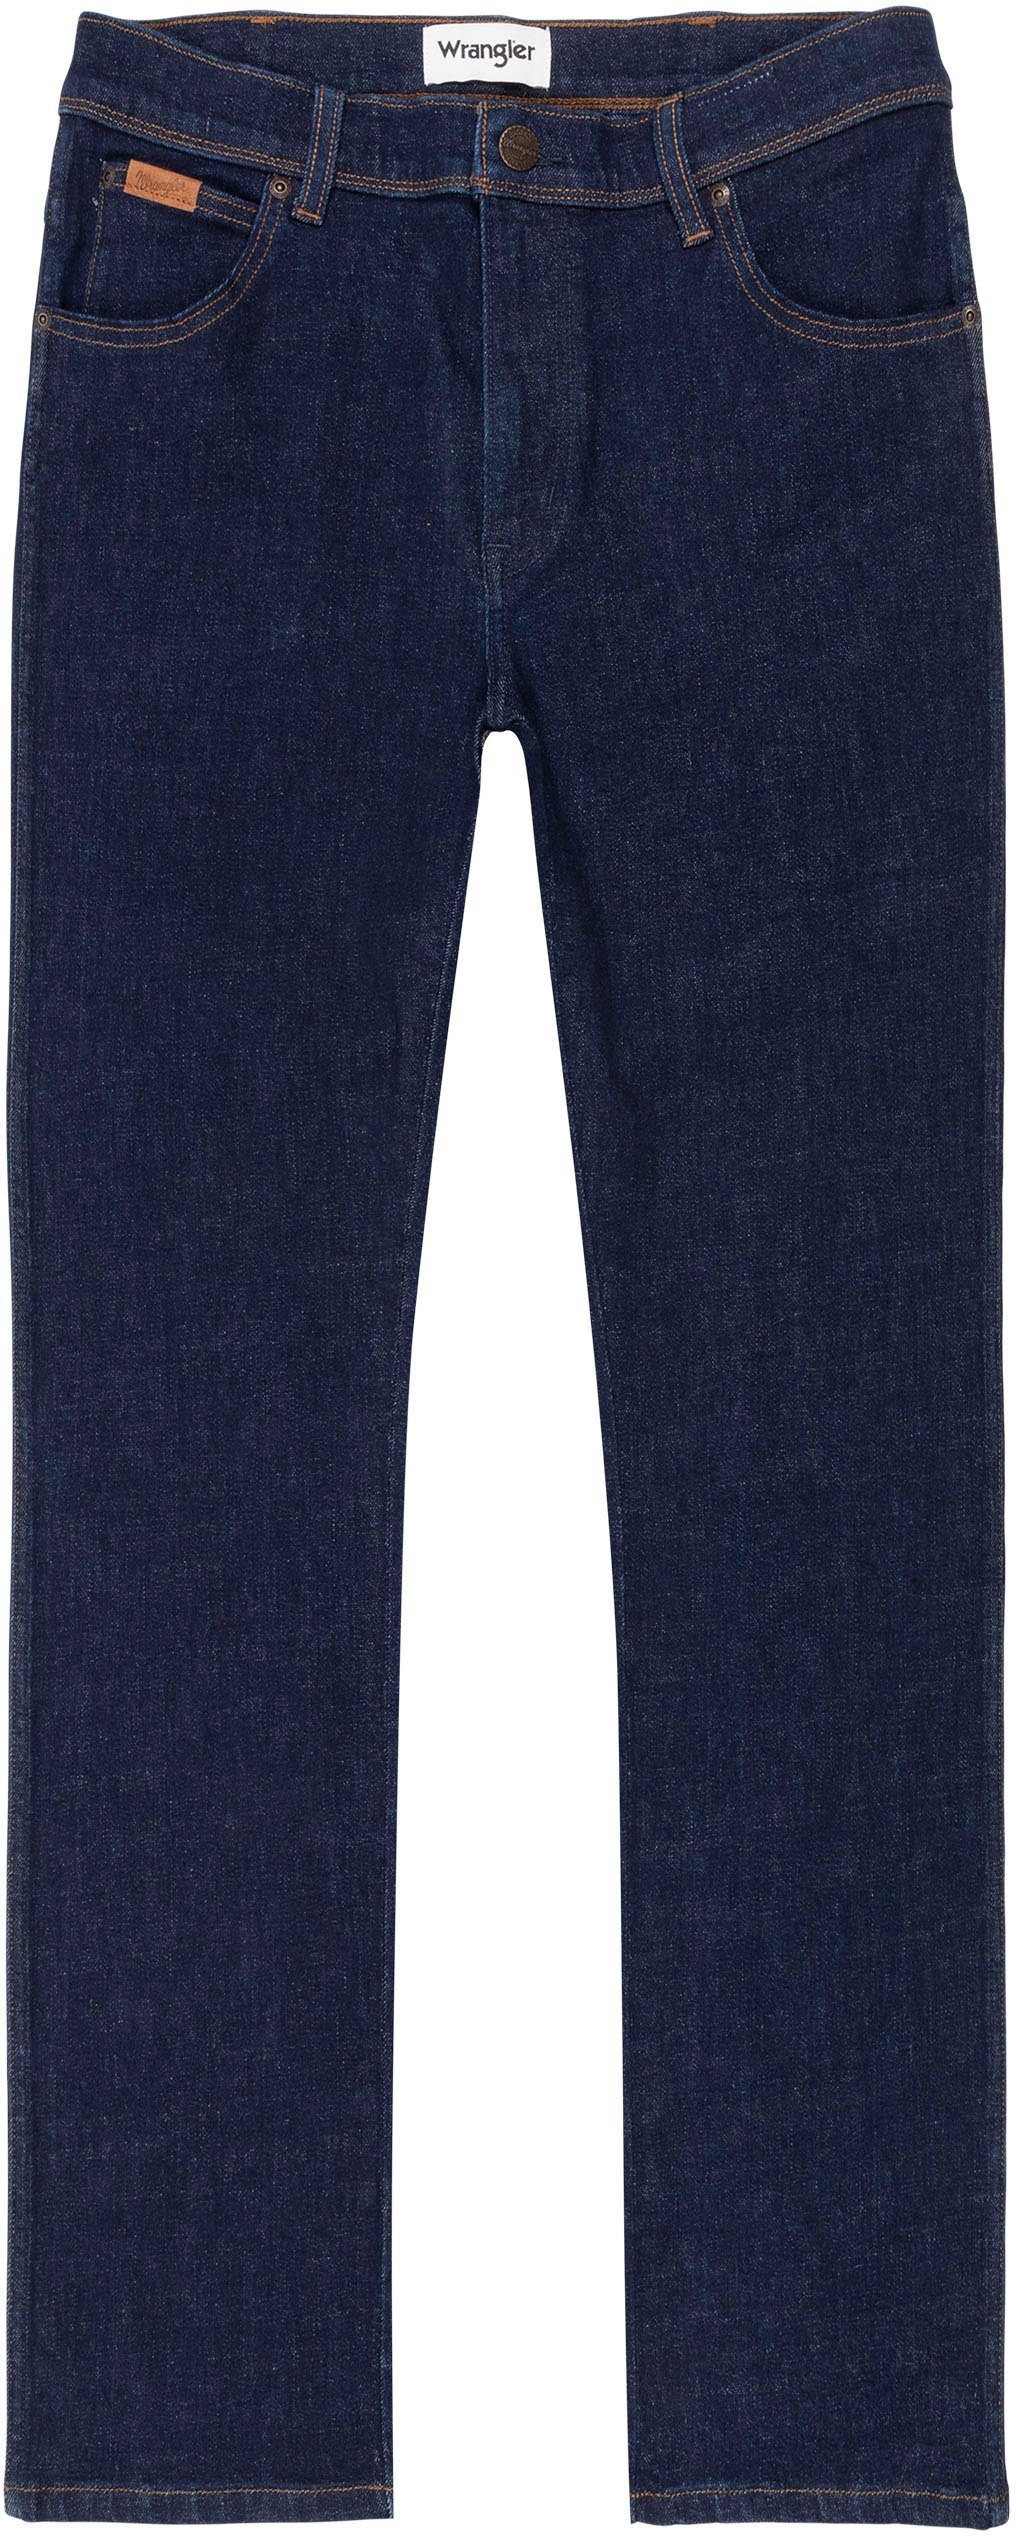 Texas Slim-fit-Jeans drifter Wrangler day Slim